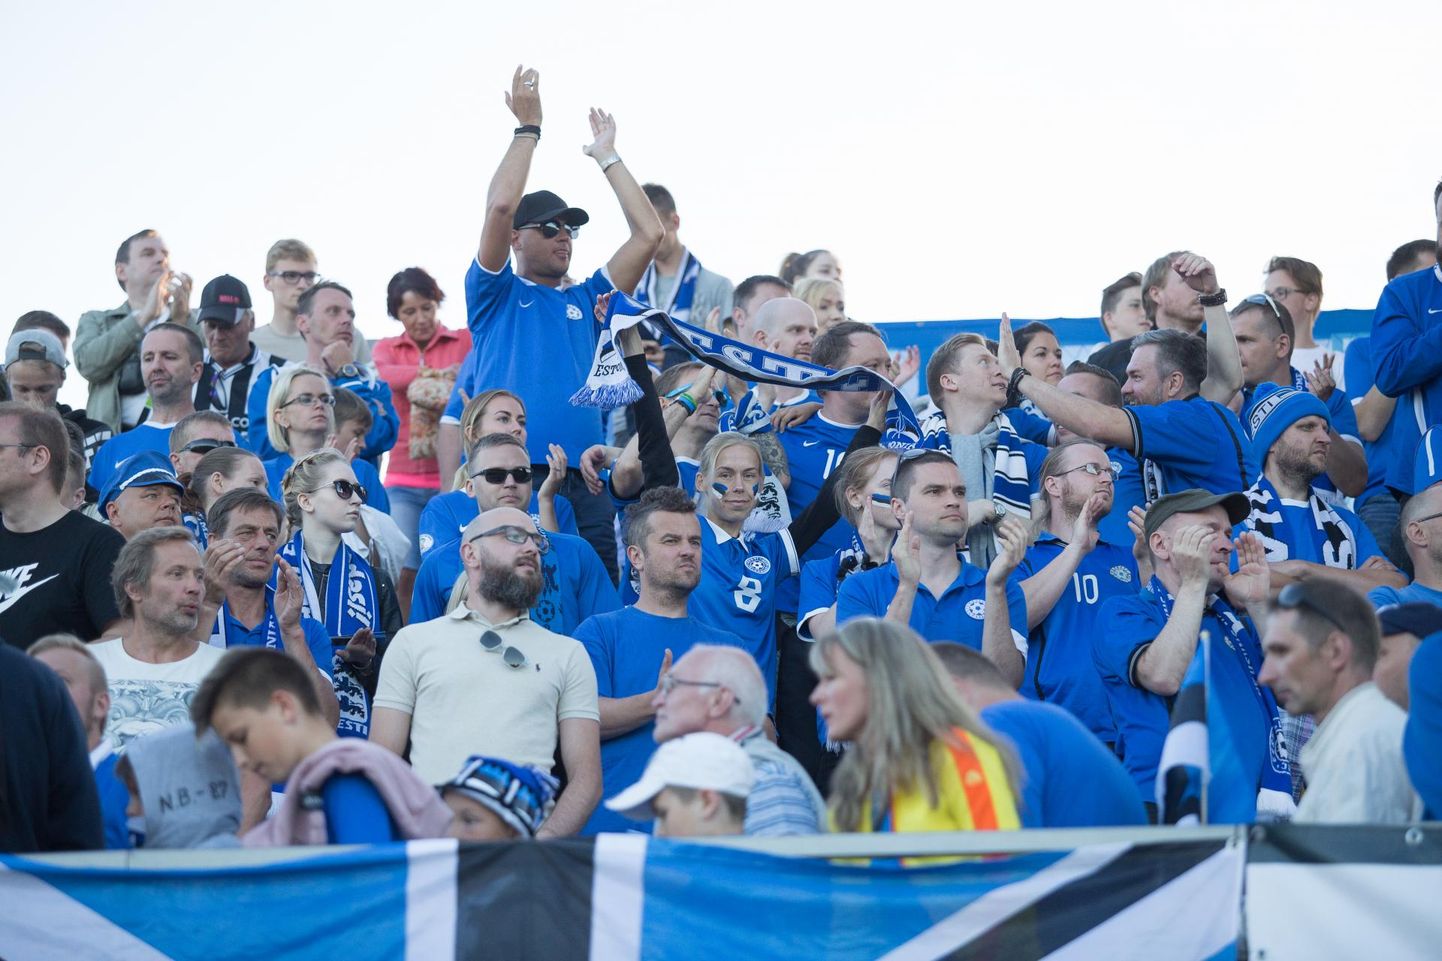 Eesti jalgpalli noortekoondis loodab oktoobris Rakvere staadionil taas koduste poolehoidjate innukale toele, kui vastu astuvad Itaalia, Taani ja Soome eakaaslased.